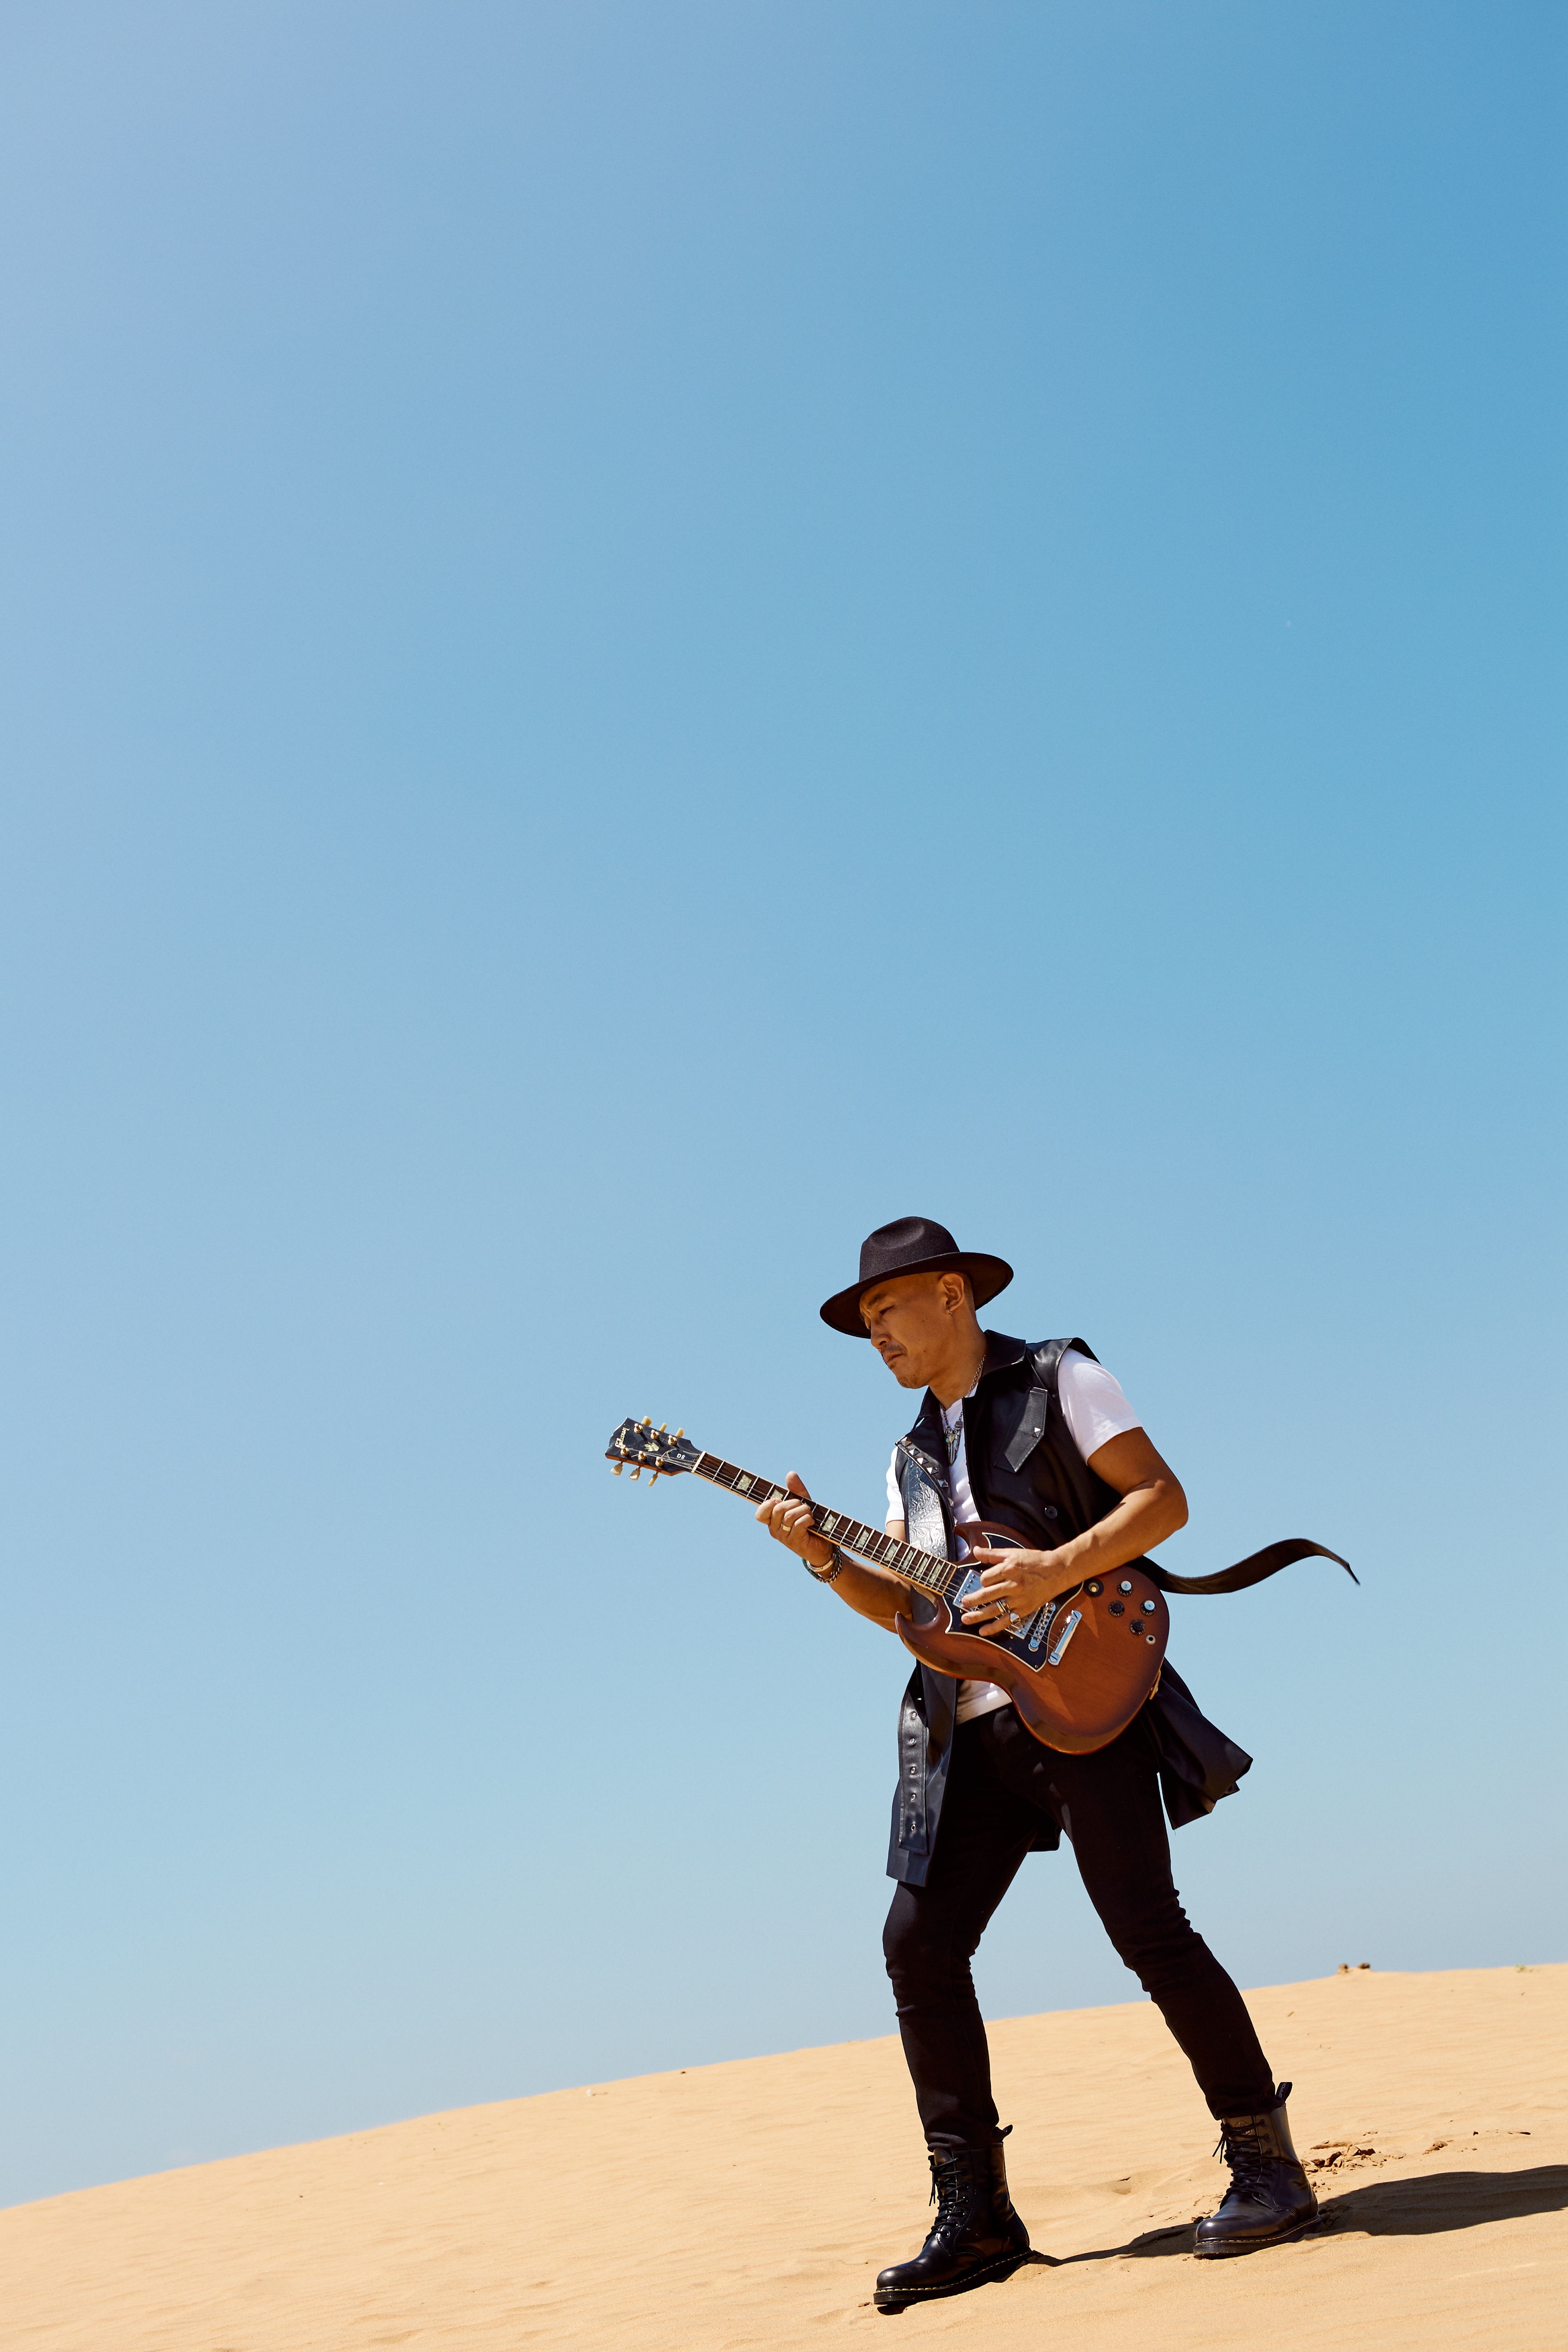 义拉拉塔首发中文单曲《撒野》 摇滚曲风诠释自由梦行者